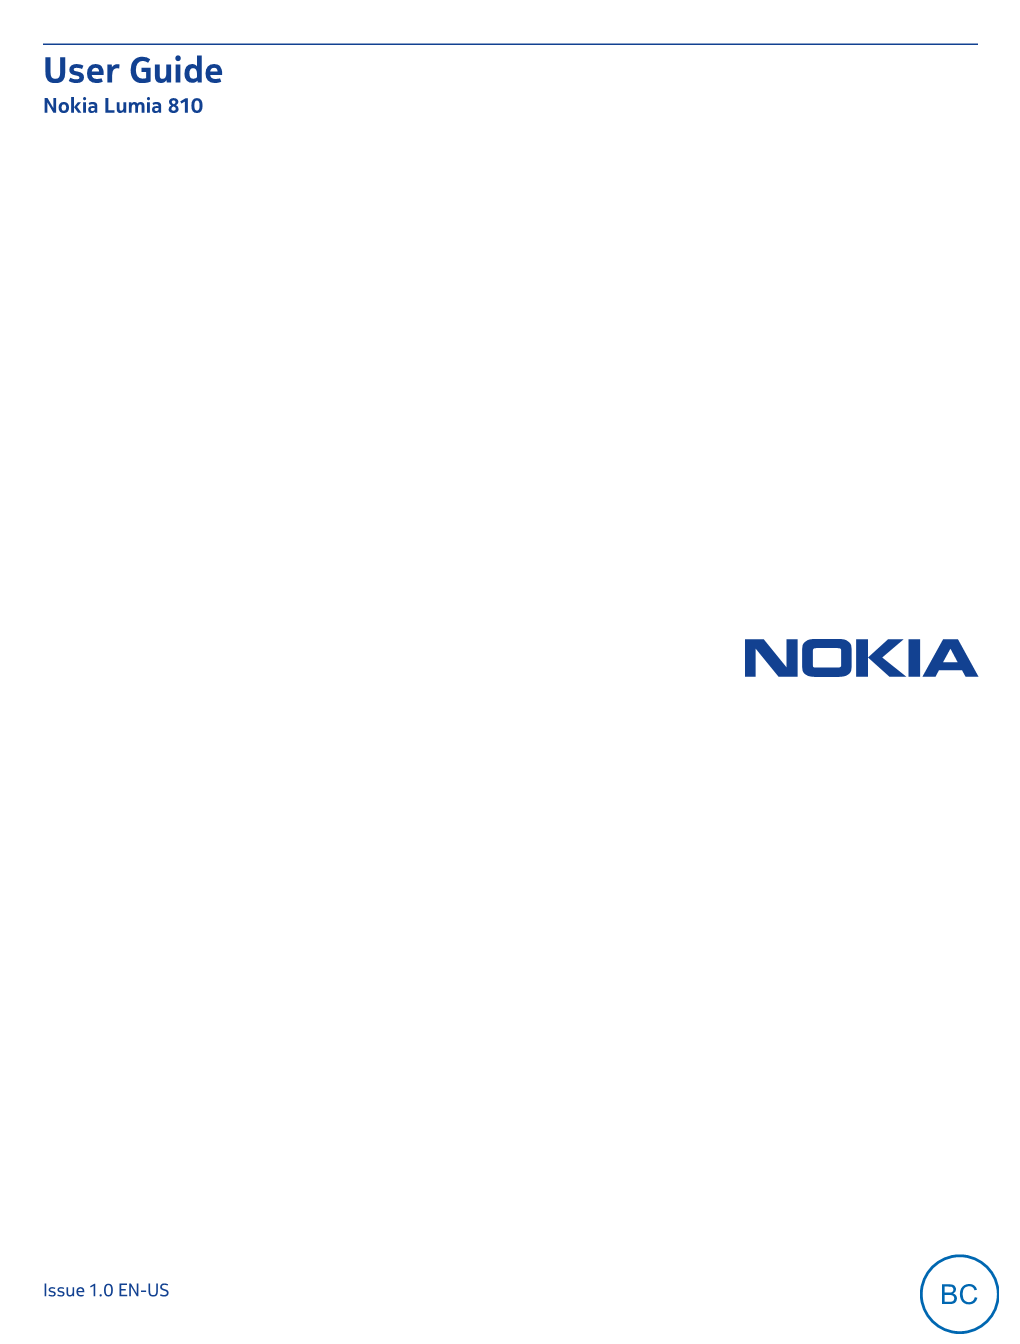 Nokia Lumia 810 Manual